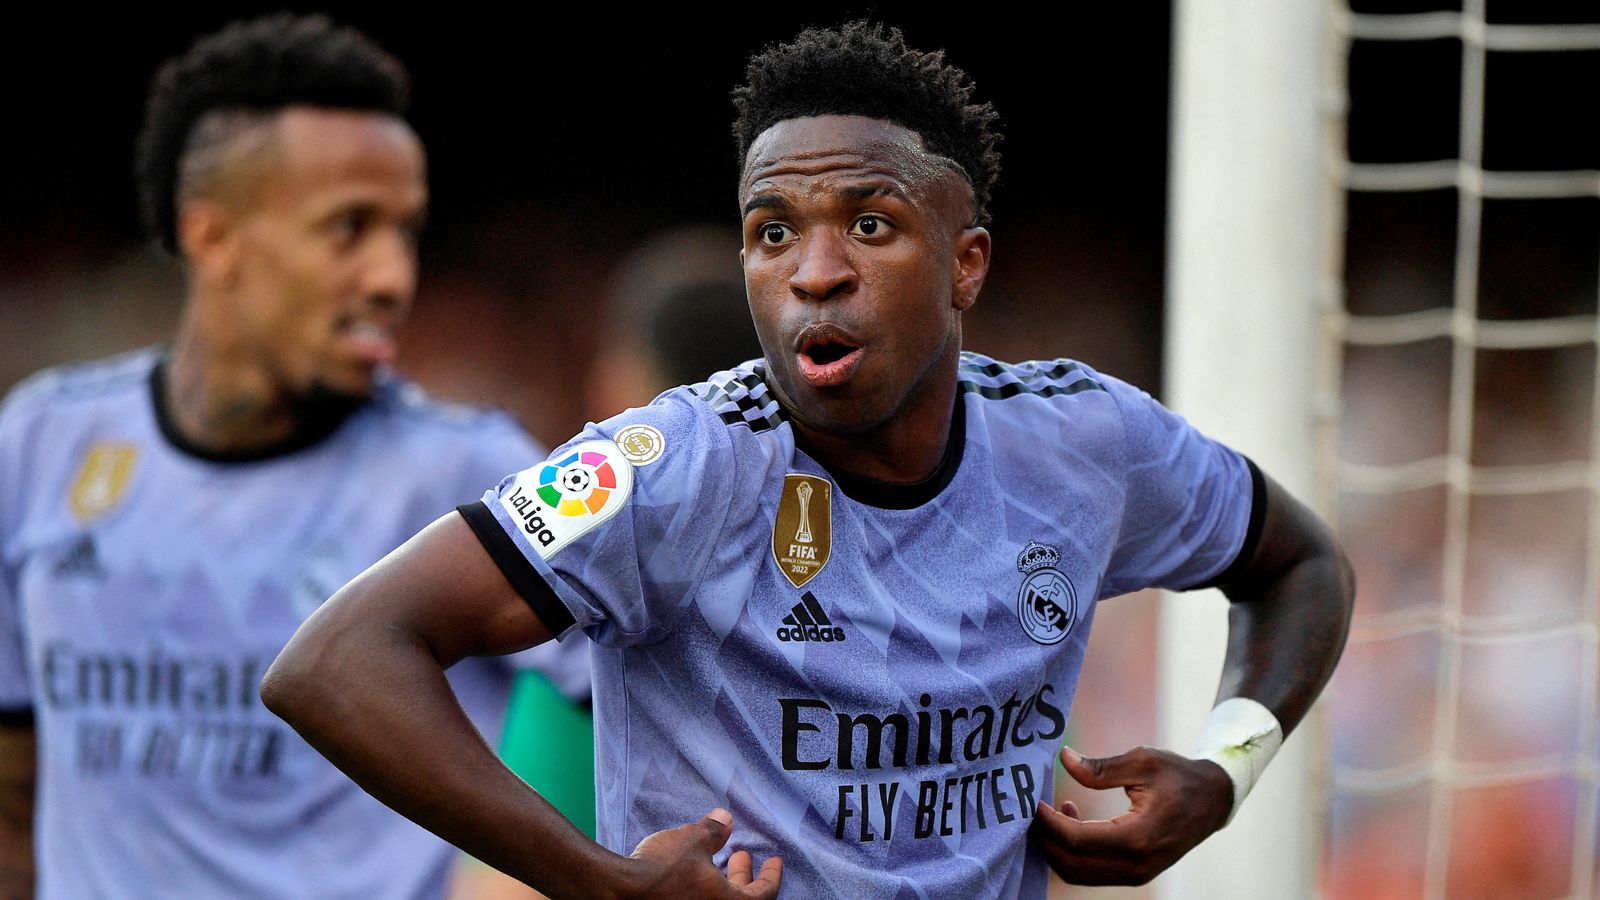 La estrella del Real Madrid, Vinicius Junior, dice que ‘pertenece a los racistas’ después de señalar a los abusadores durante el partido de La Liga de España |  Noticias del mundo